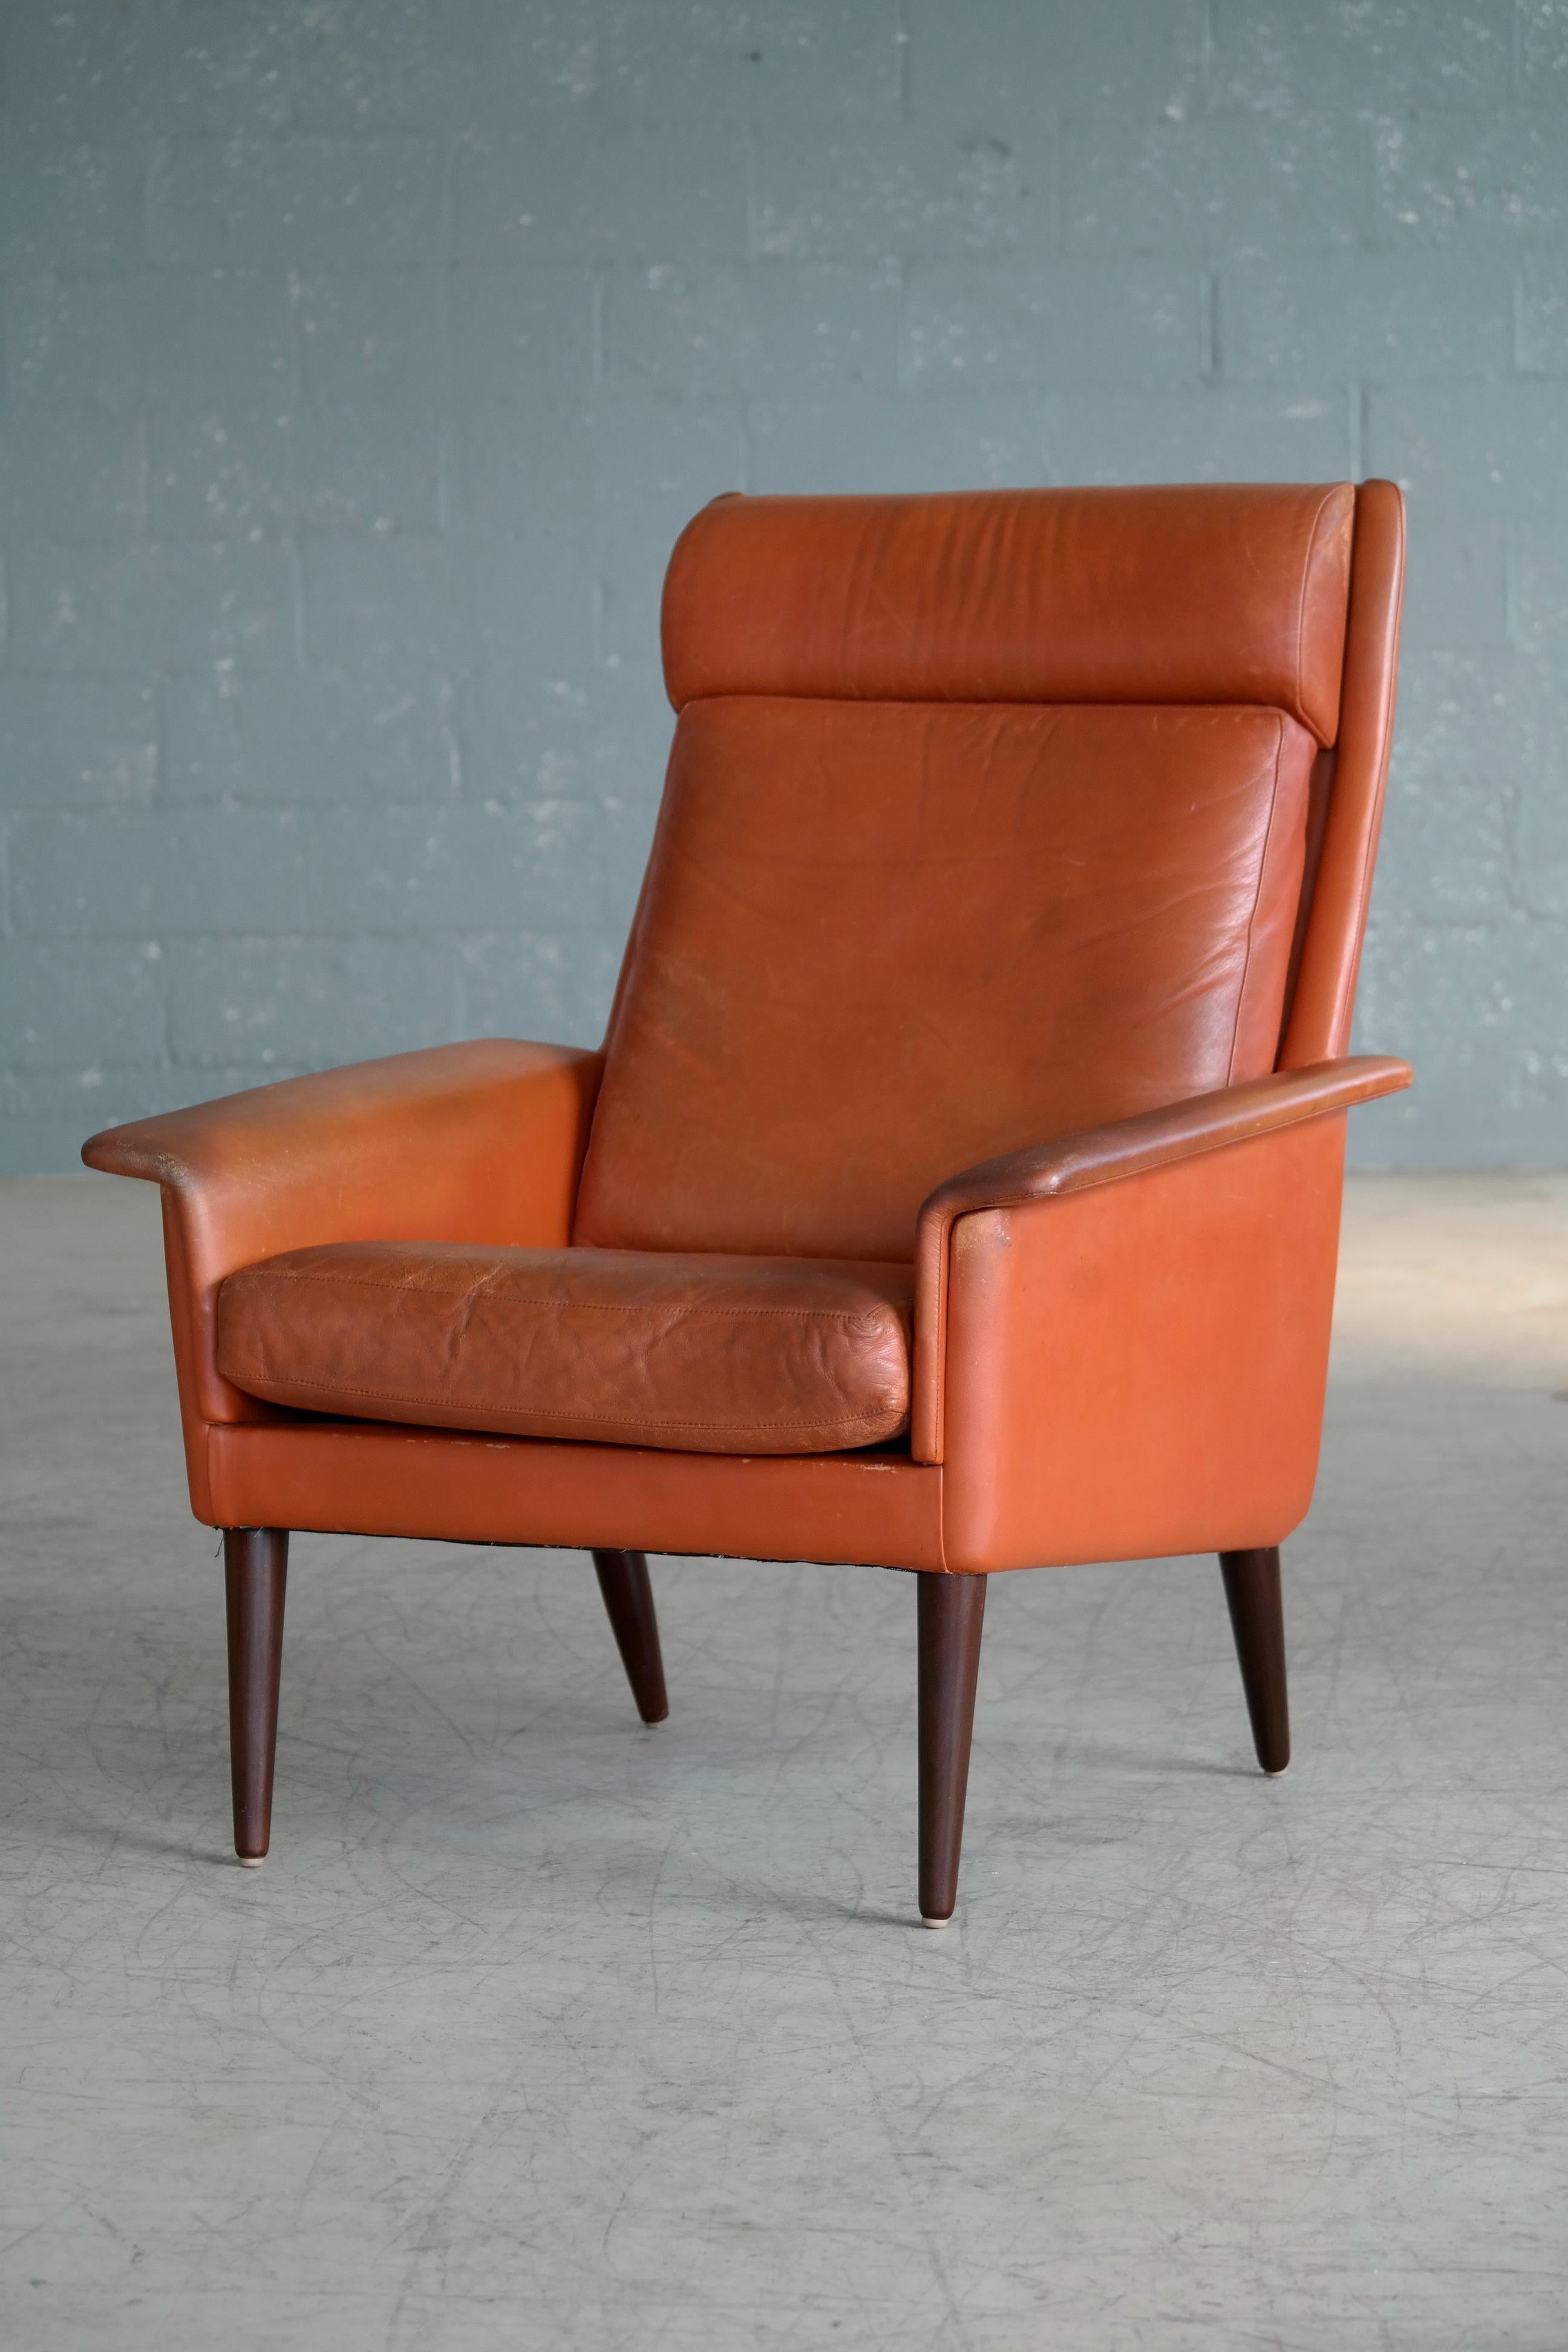 Eleganter und sehr cooler dänischer 1960er-Jahre-Sessel mit hoher Rückenlehne in Cognac, der das Herstelleretikett von Sibast Möbel auf dem unteren Rahmen trägt. Der Stuhl ist sehr im Stil von Arne Vodder, der für Sibast entworfen hat, und er ist